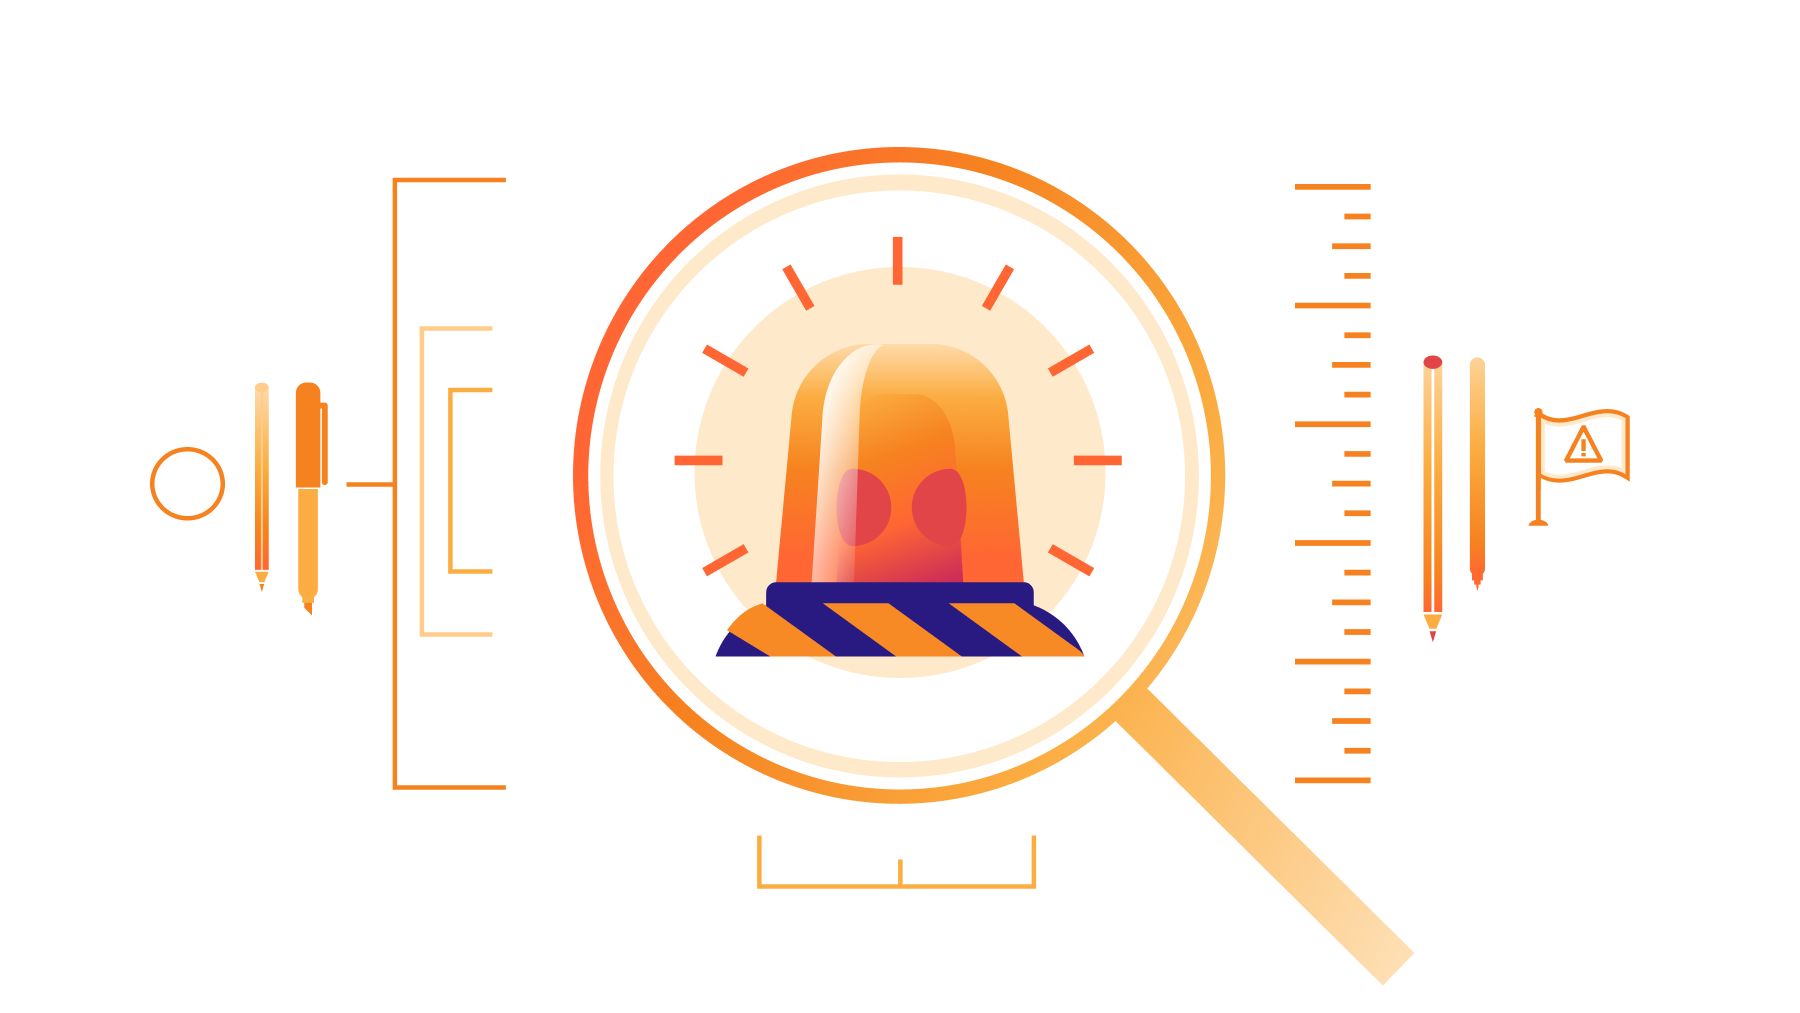 데이터 센터 대규모 정전(또 다시): Cloudflare 코드 오렌지 테스트됨